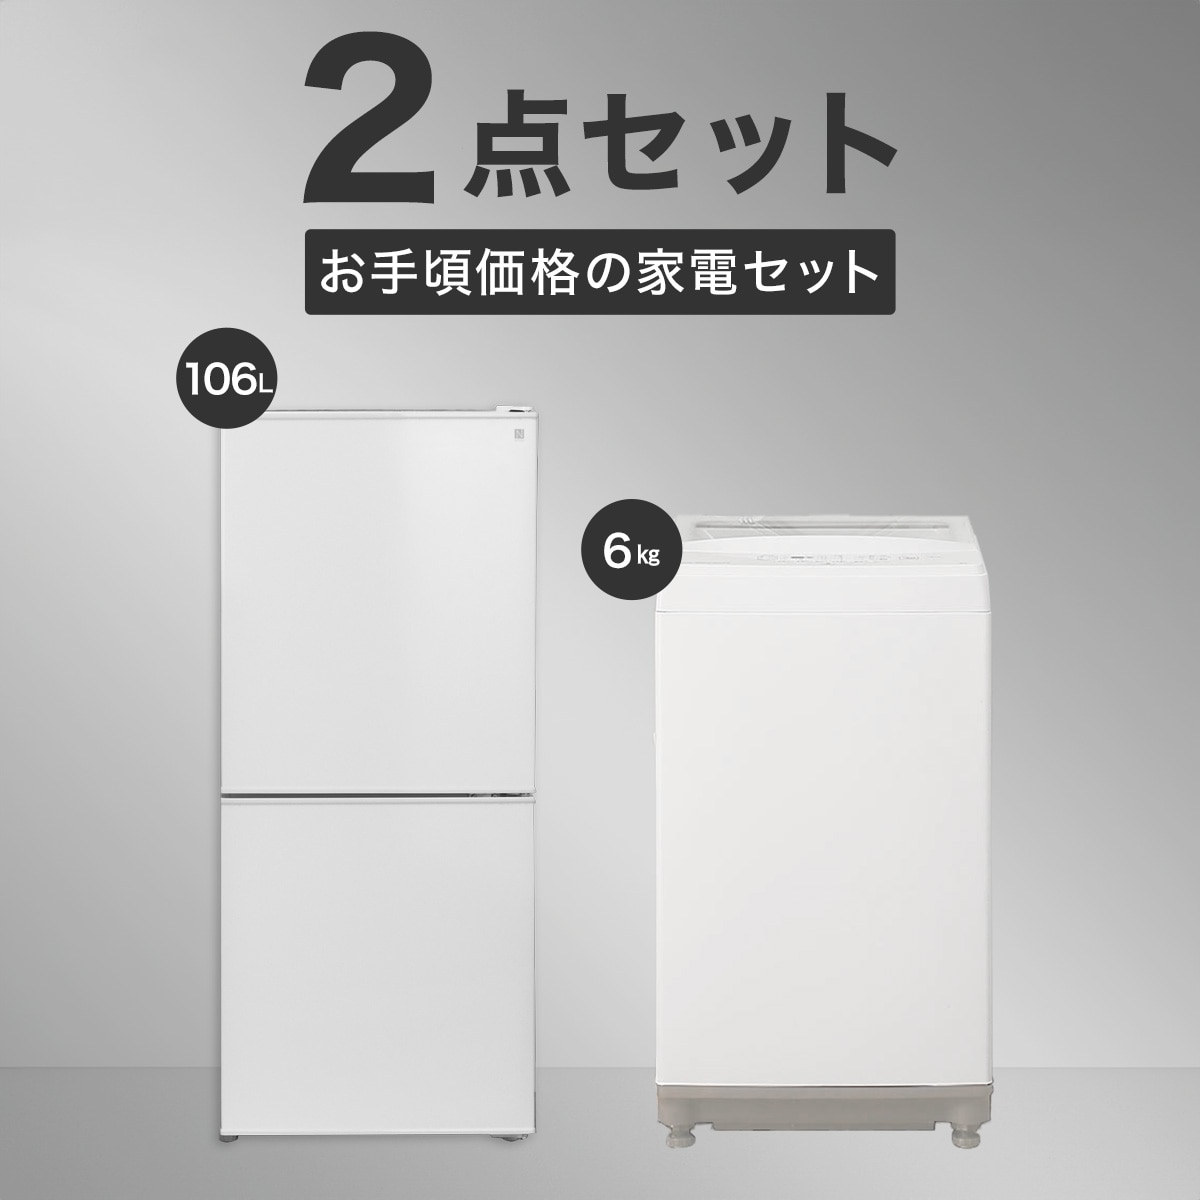 【家電2点セット】106L冷蔵庫＋6㎏洗濯機セット(ホワイト)